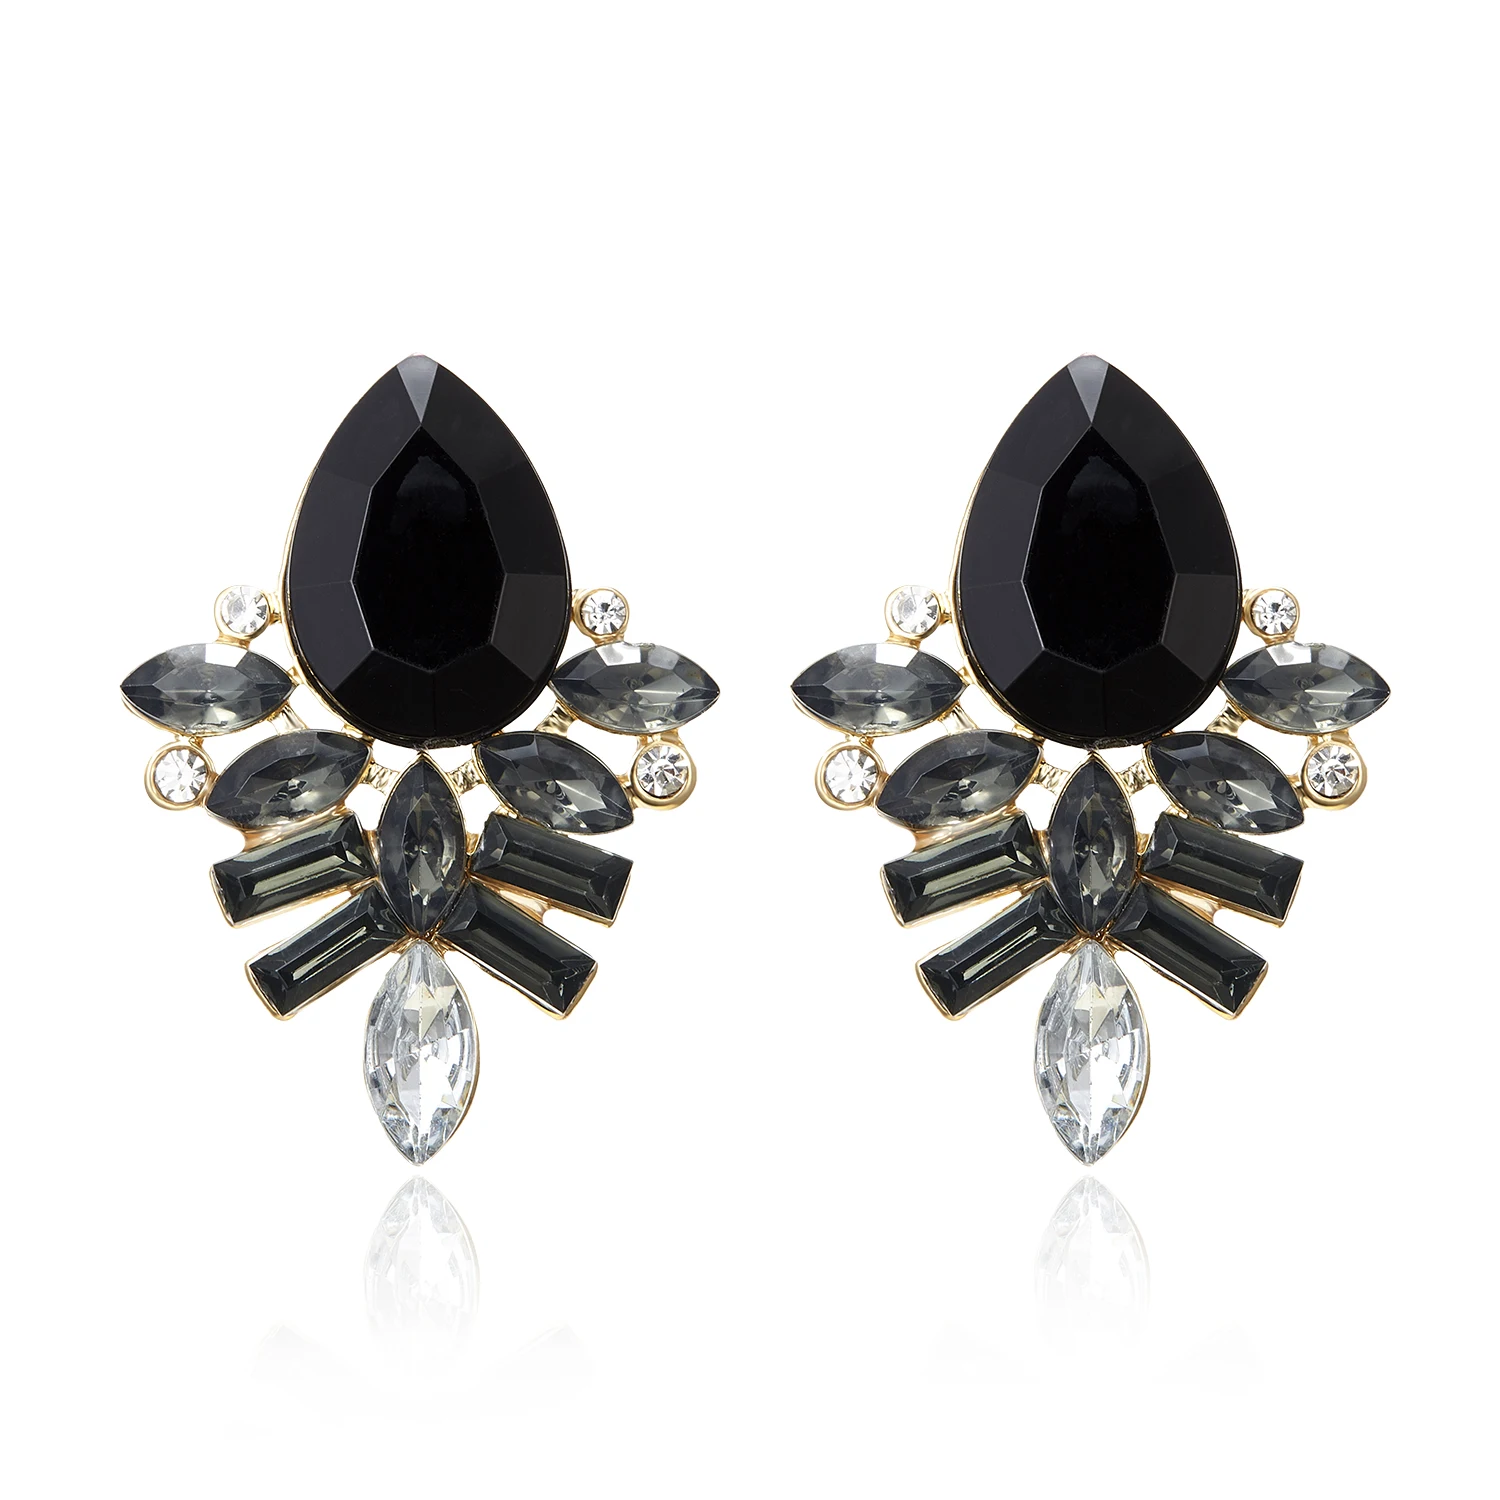 HTB1GCpwXynrK1RjSsziq6xptpXaf - NEW Women Fashion Jewelry Style Blue/Black/Pink Earrings Handmade Rhinestone sweet stud crystal Dangle earrings for women girl